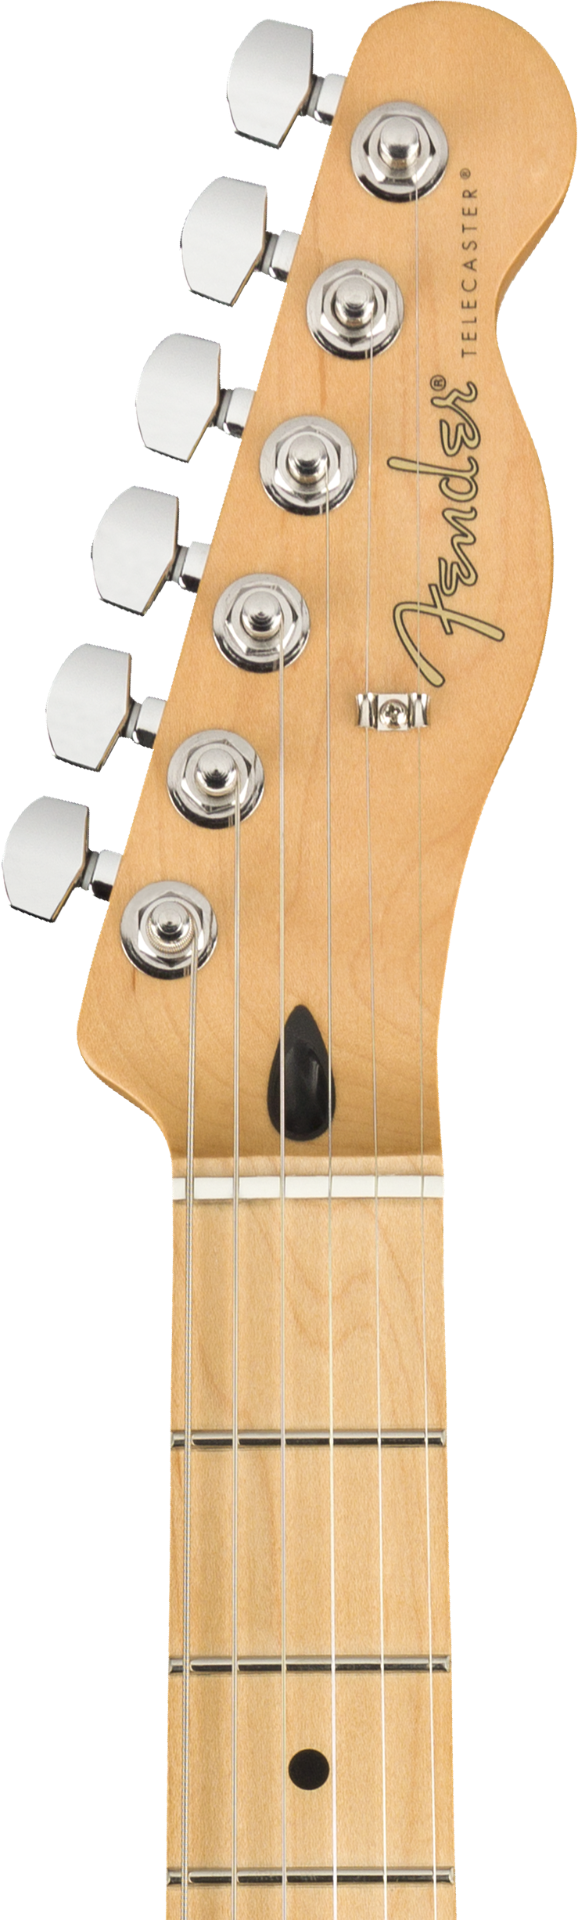 Fender Player Telecaster Electric Guitar - Maple Fingerboard - 3 Color Sunburst